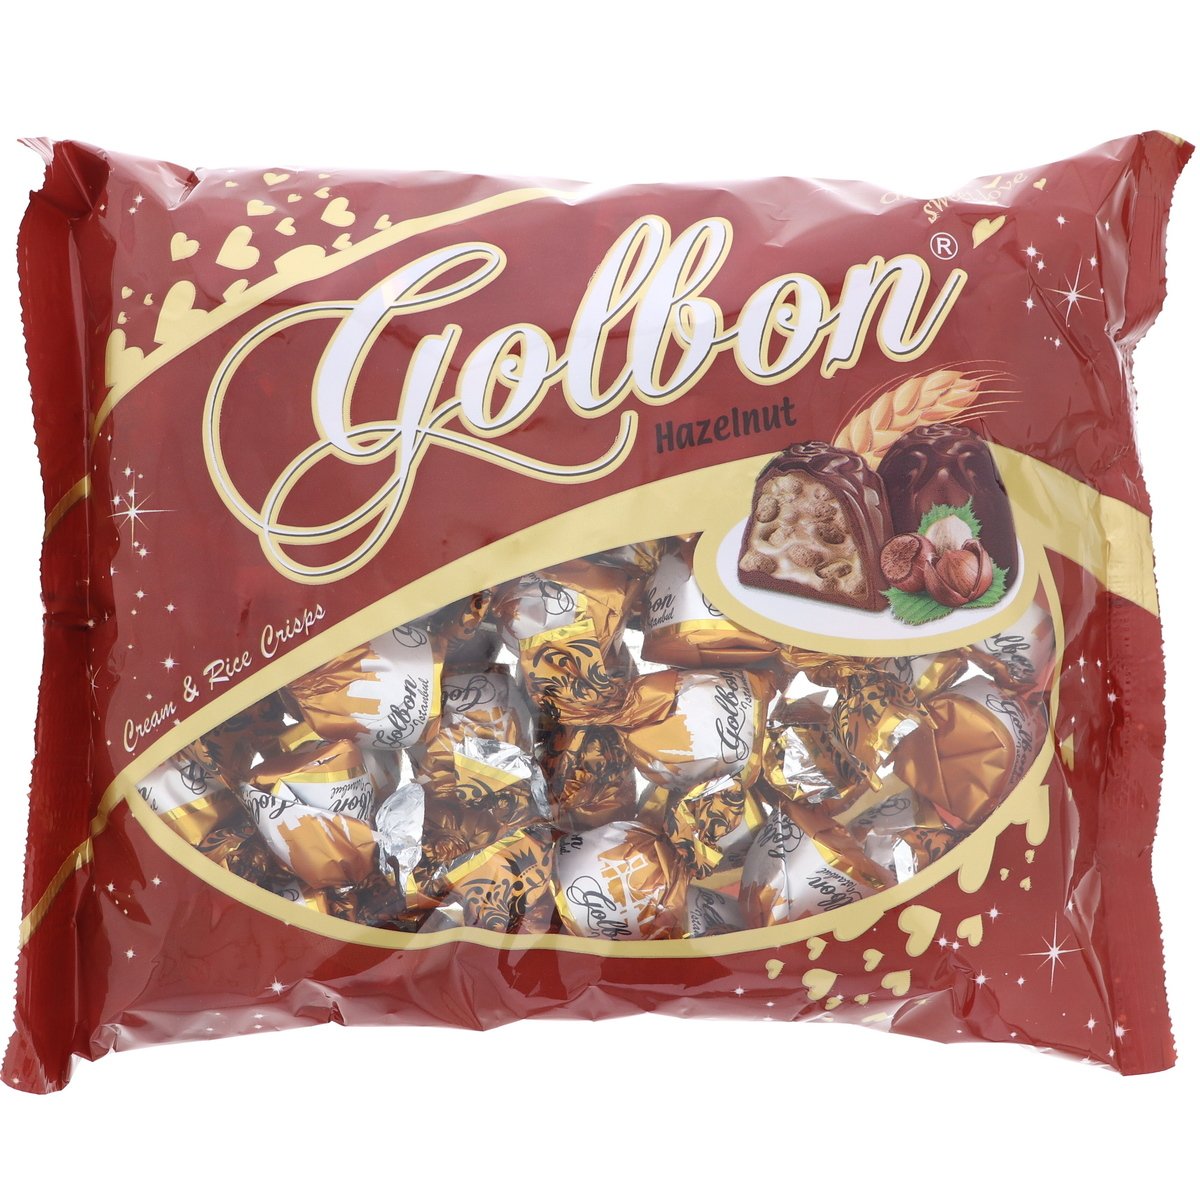 Golbon Chocolate With Hazelnut Flavour 1 kg